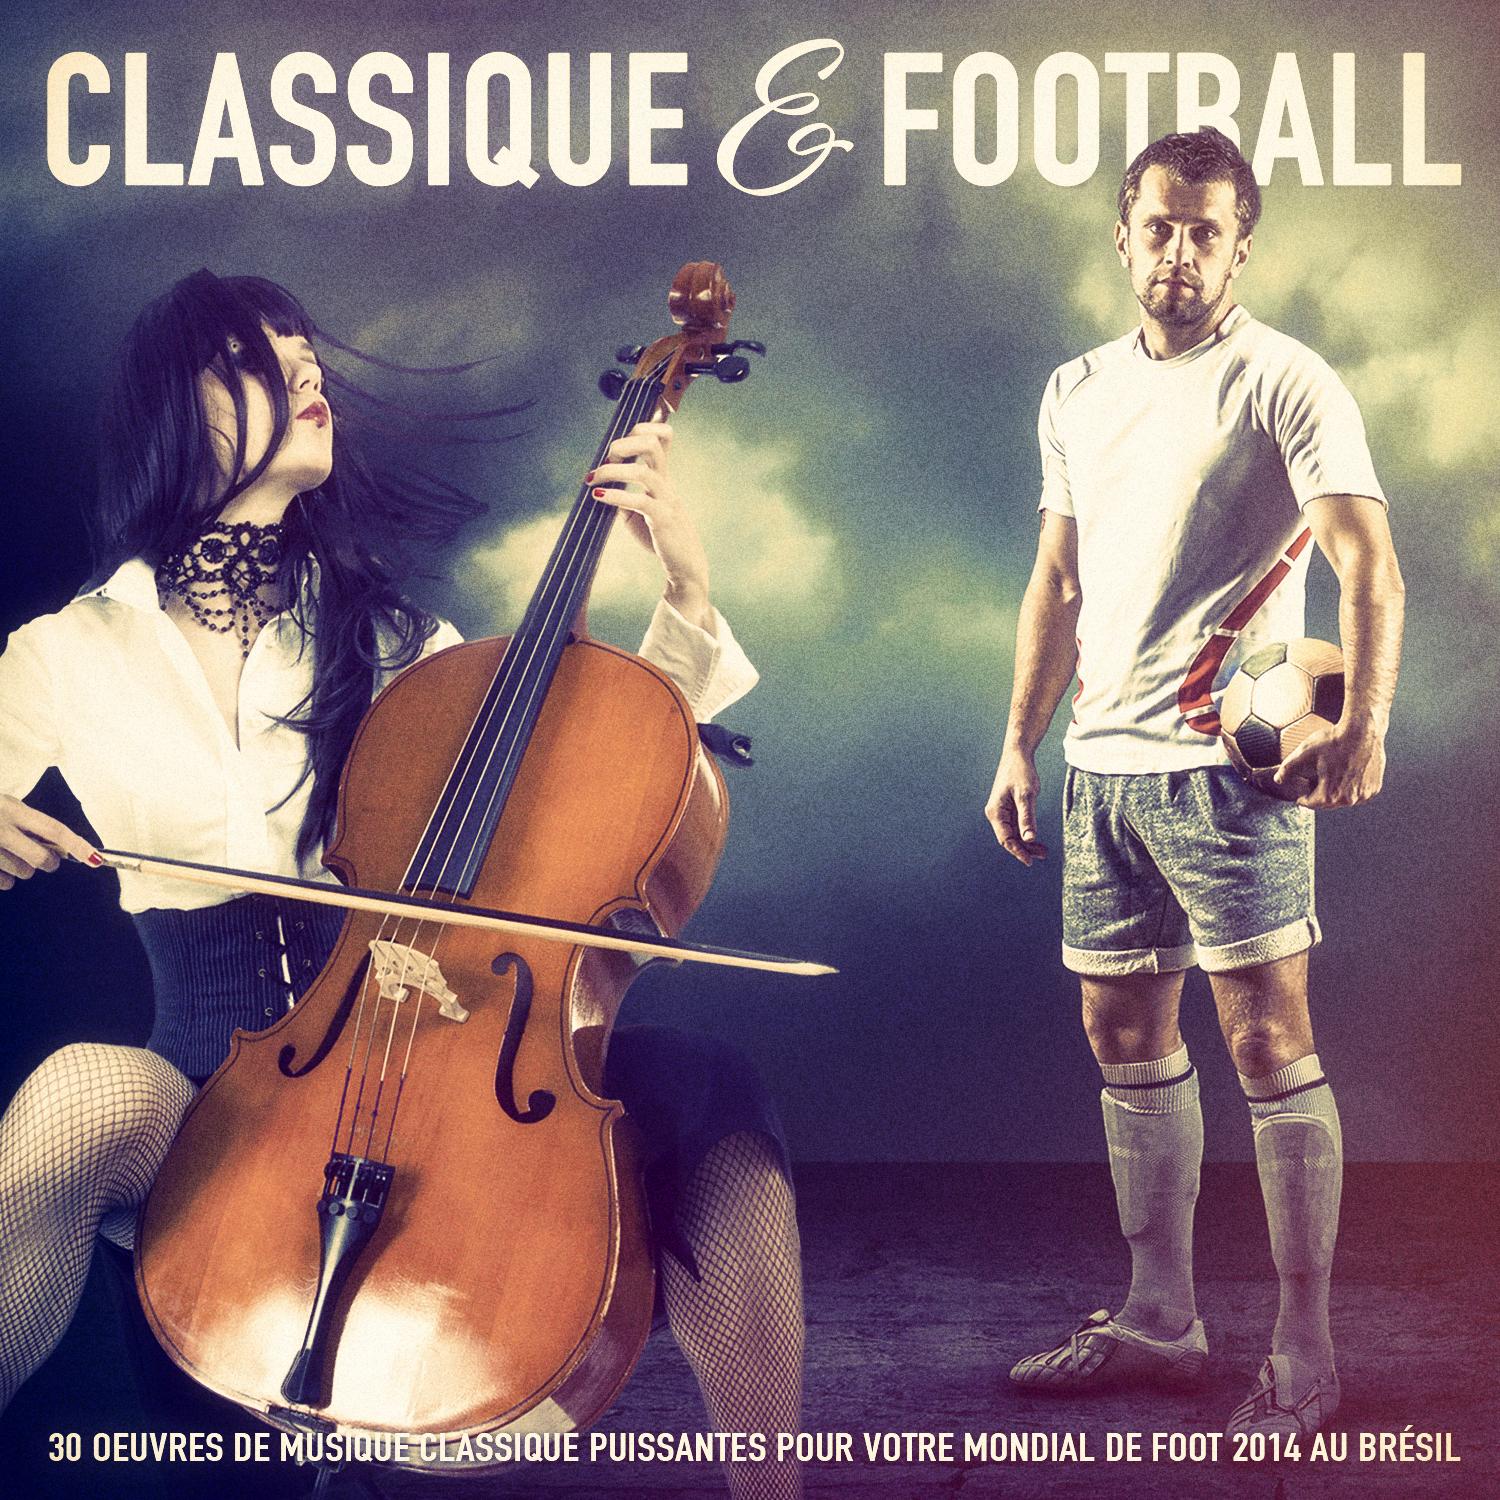 Musique classique  Football: 30 oeuvres de musique classique puissantes pour votre mondial de foot 2014 au Bre sil